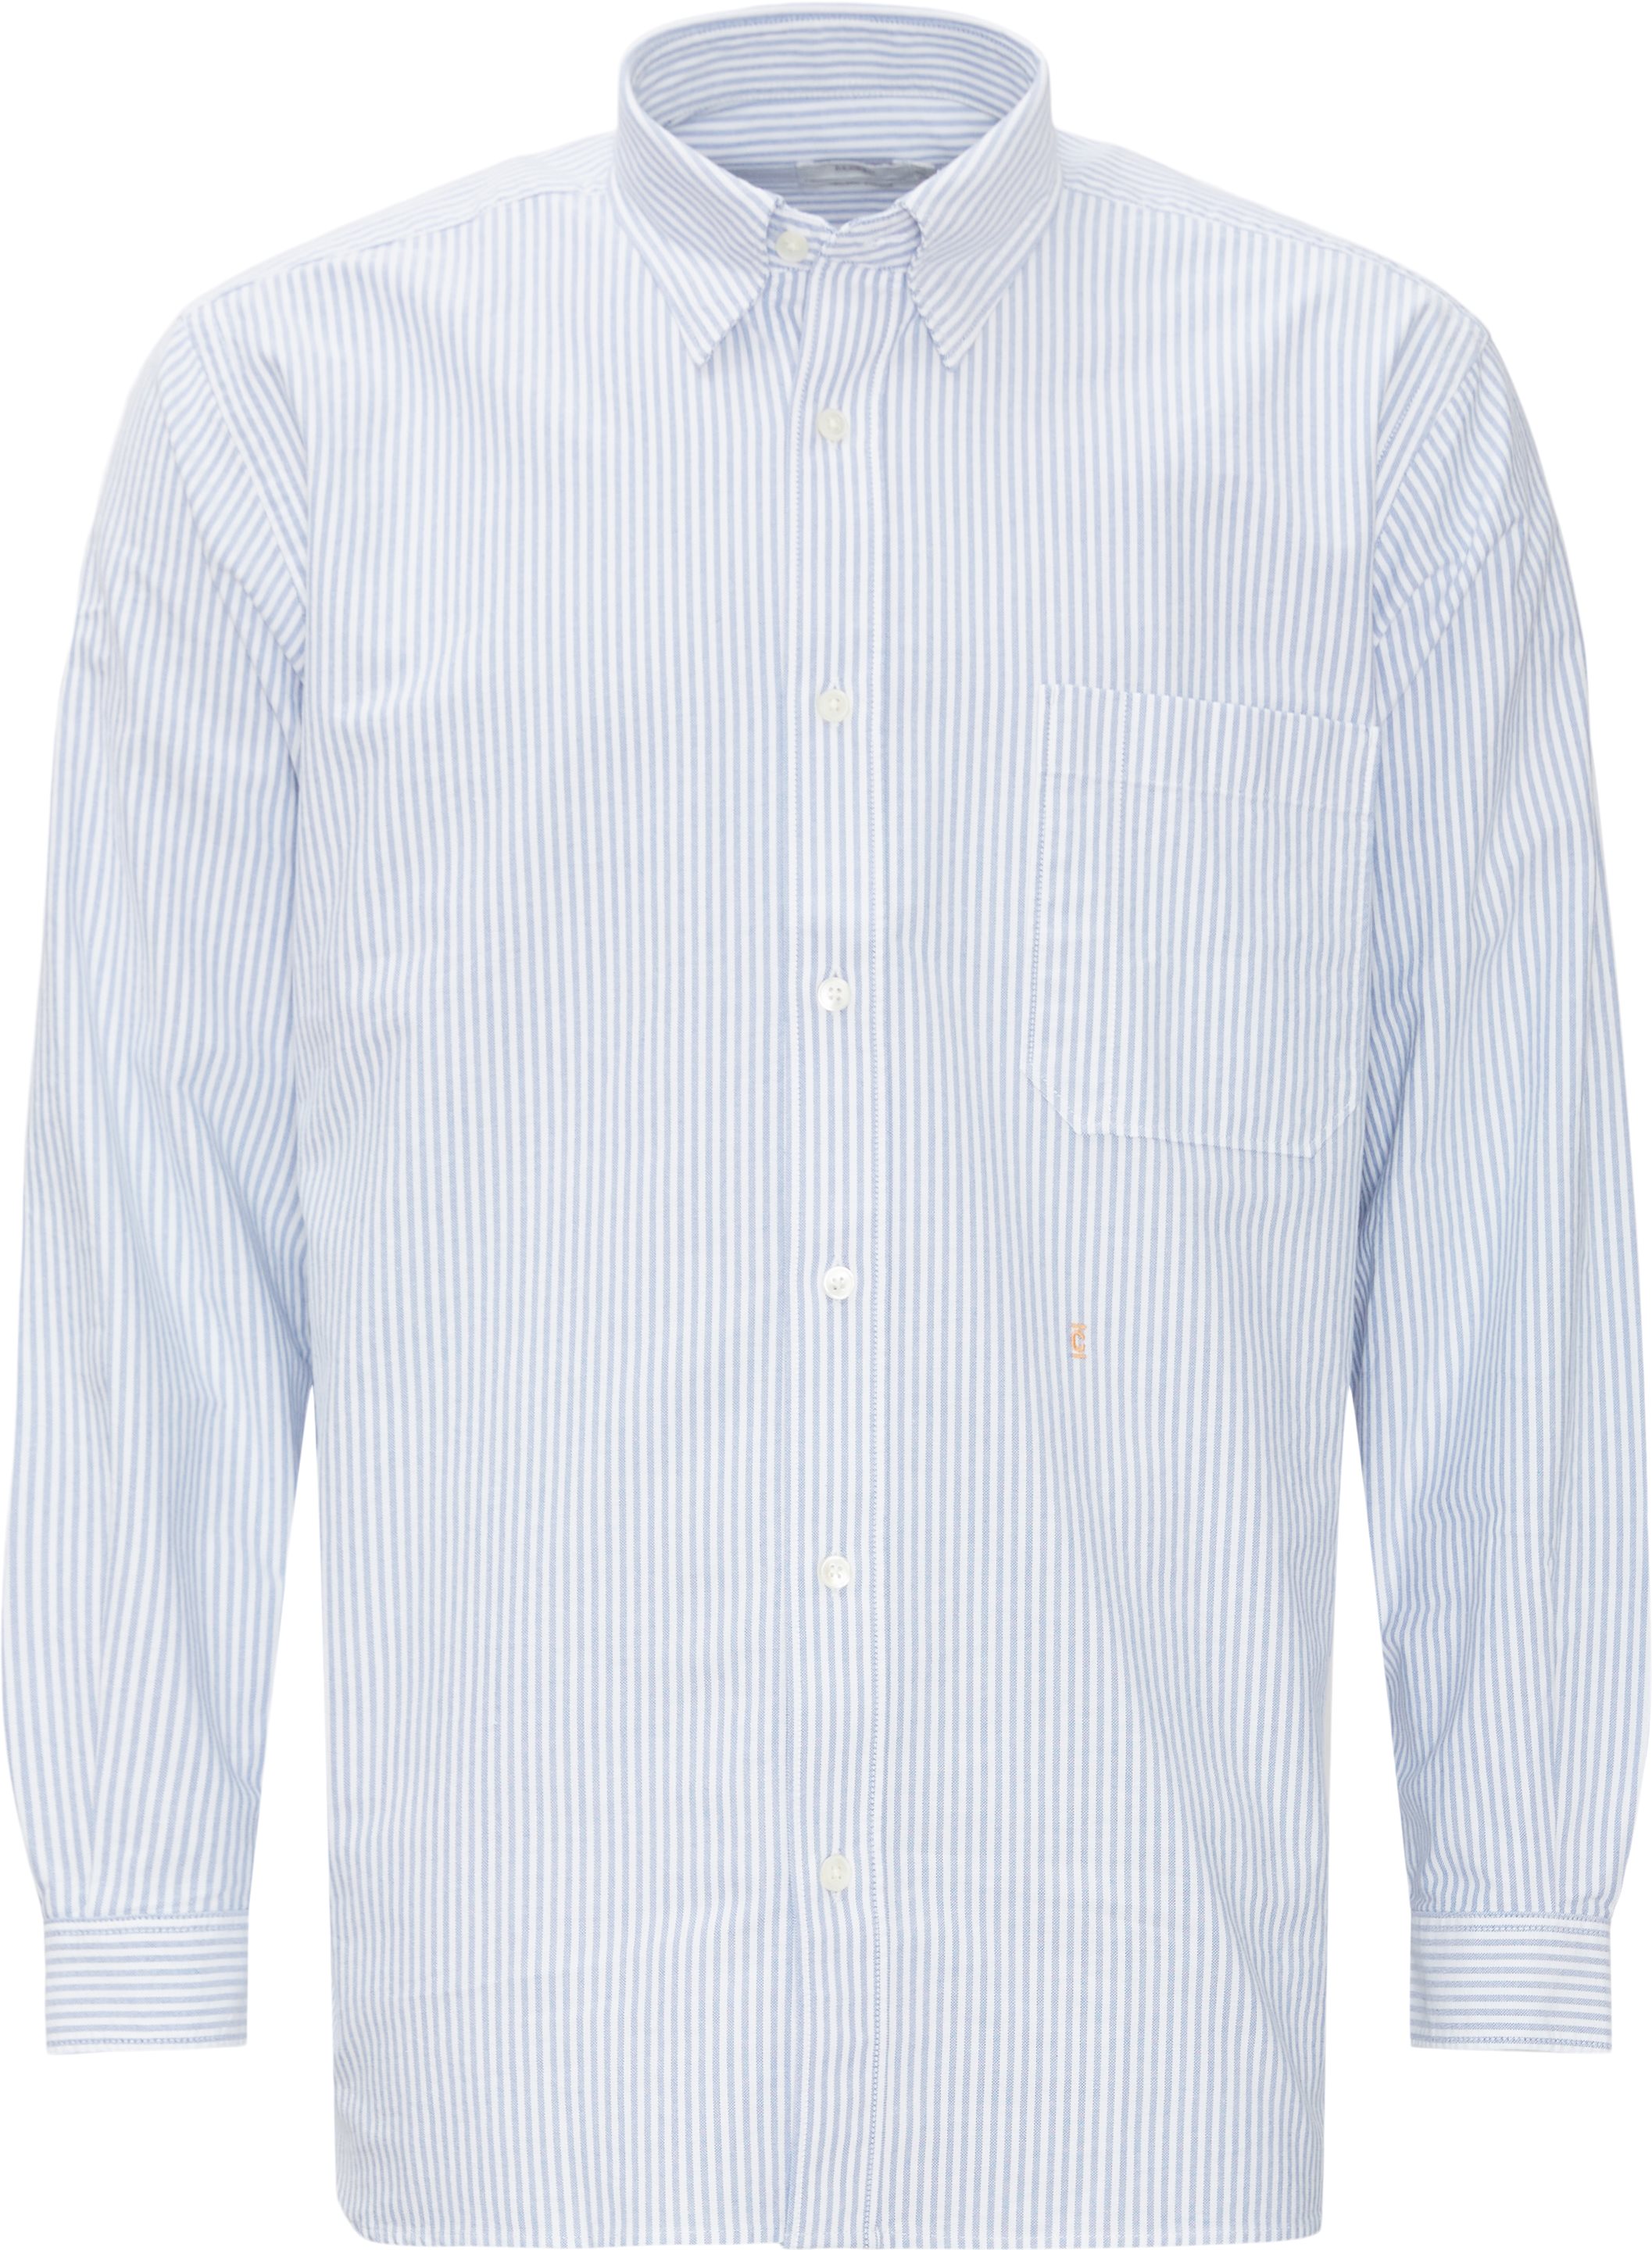 C84938 Stripe Oxford Shirt - Skjorter - Regular fit - Blå